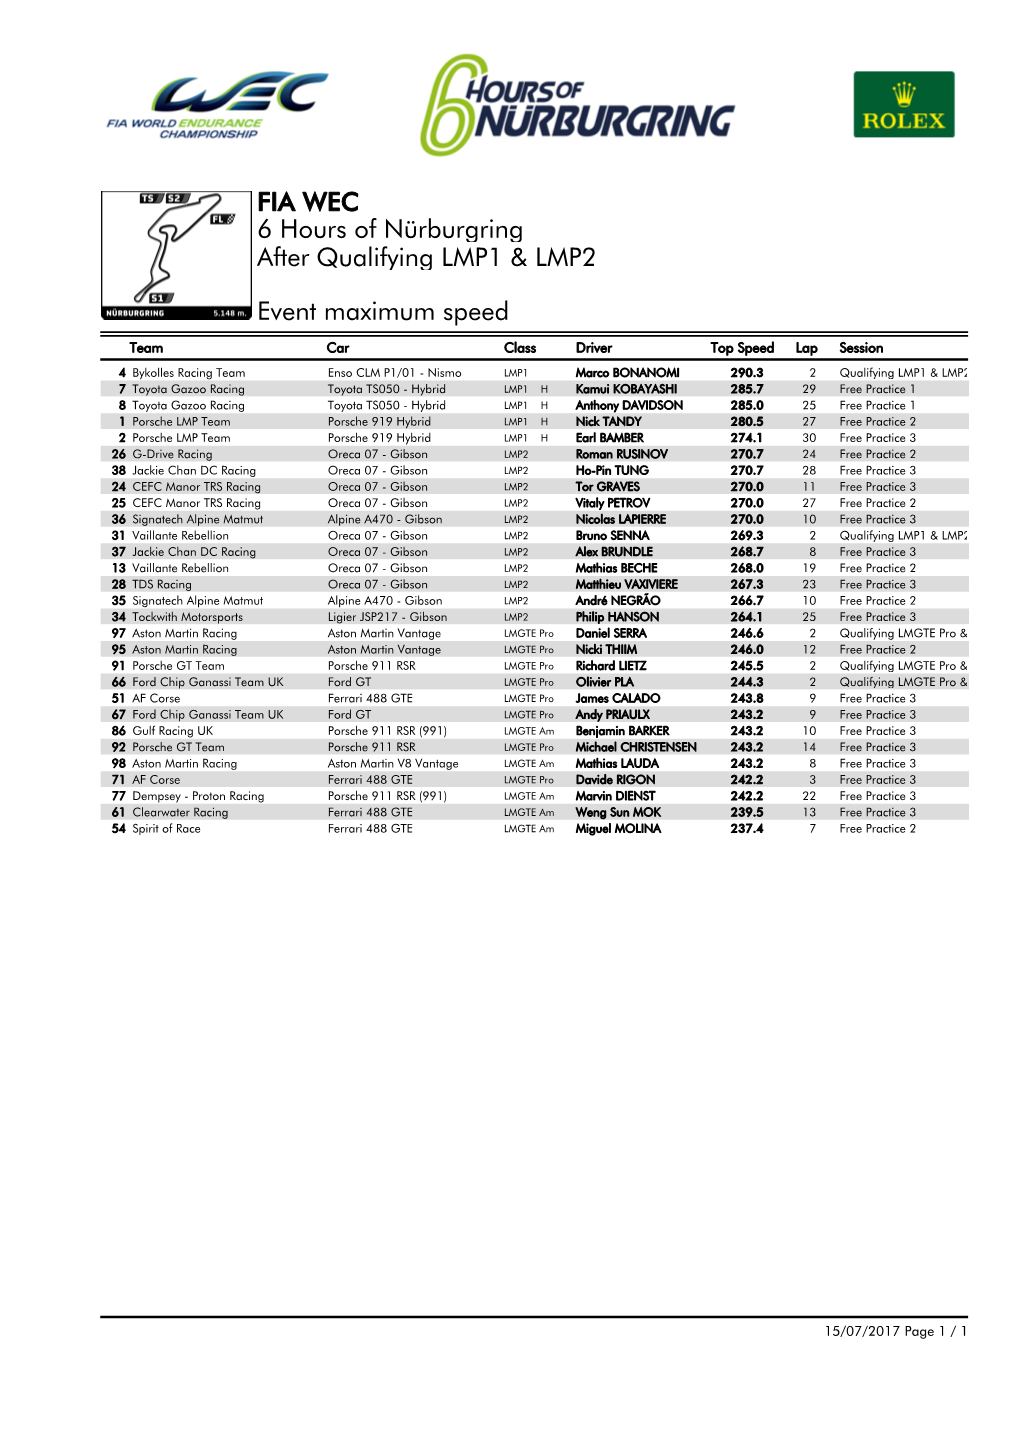 Event Maximum Speed Qualifying LMP1 & LMP2 6 Hours Of